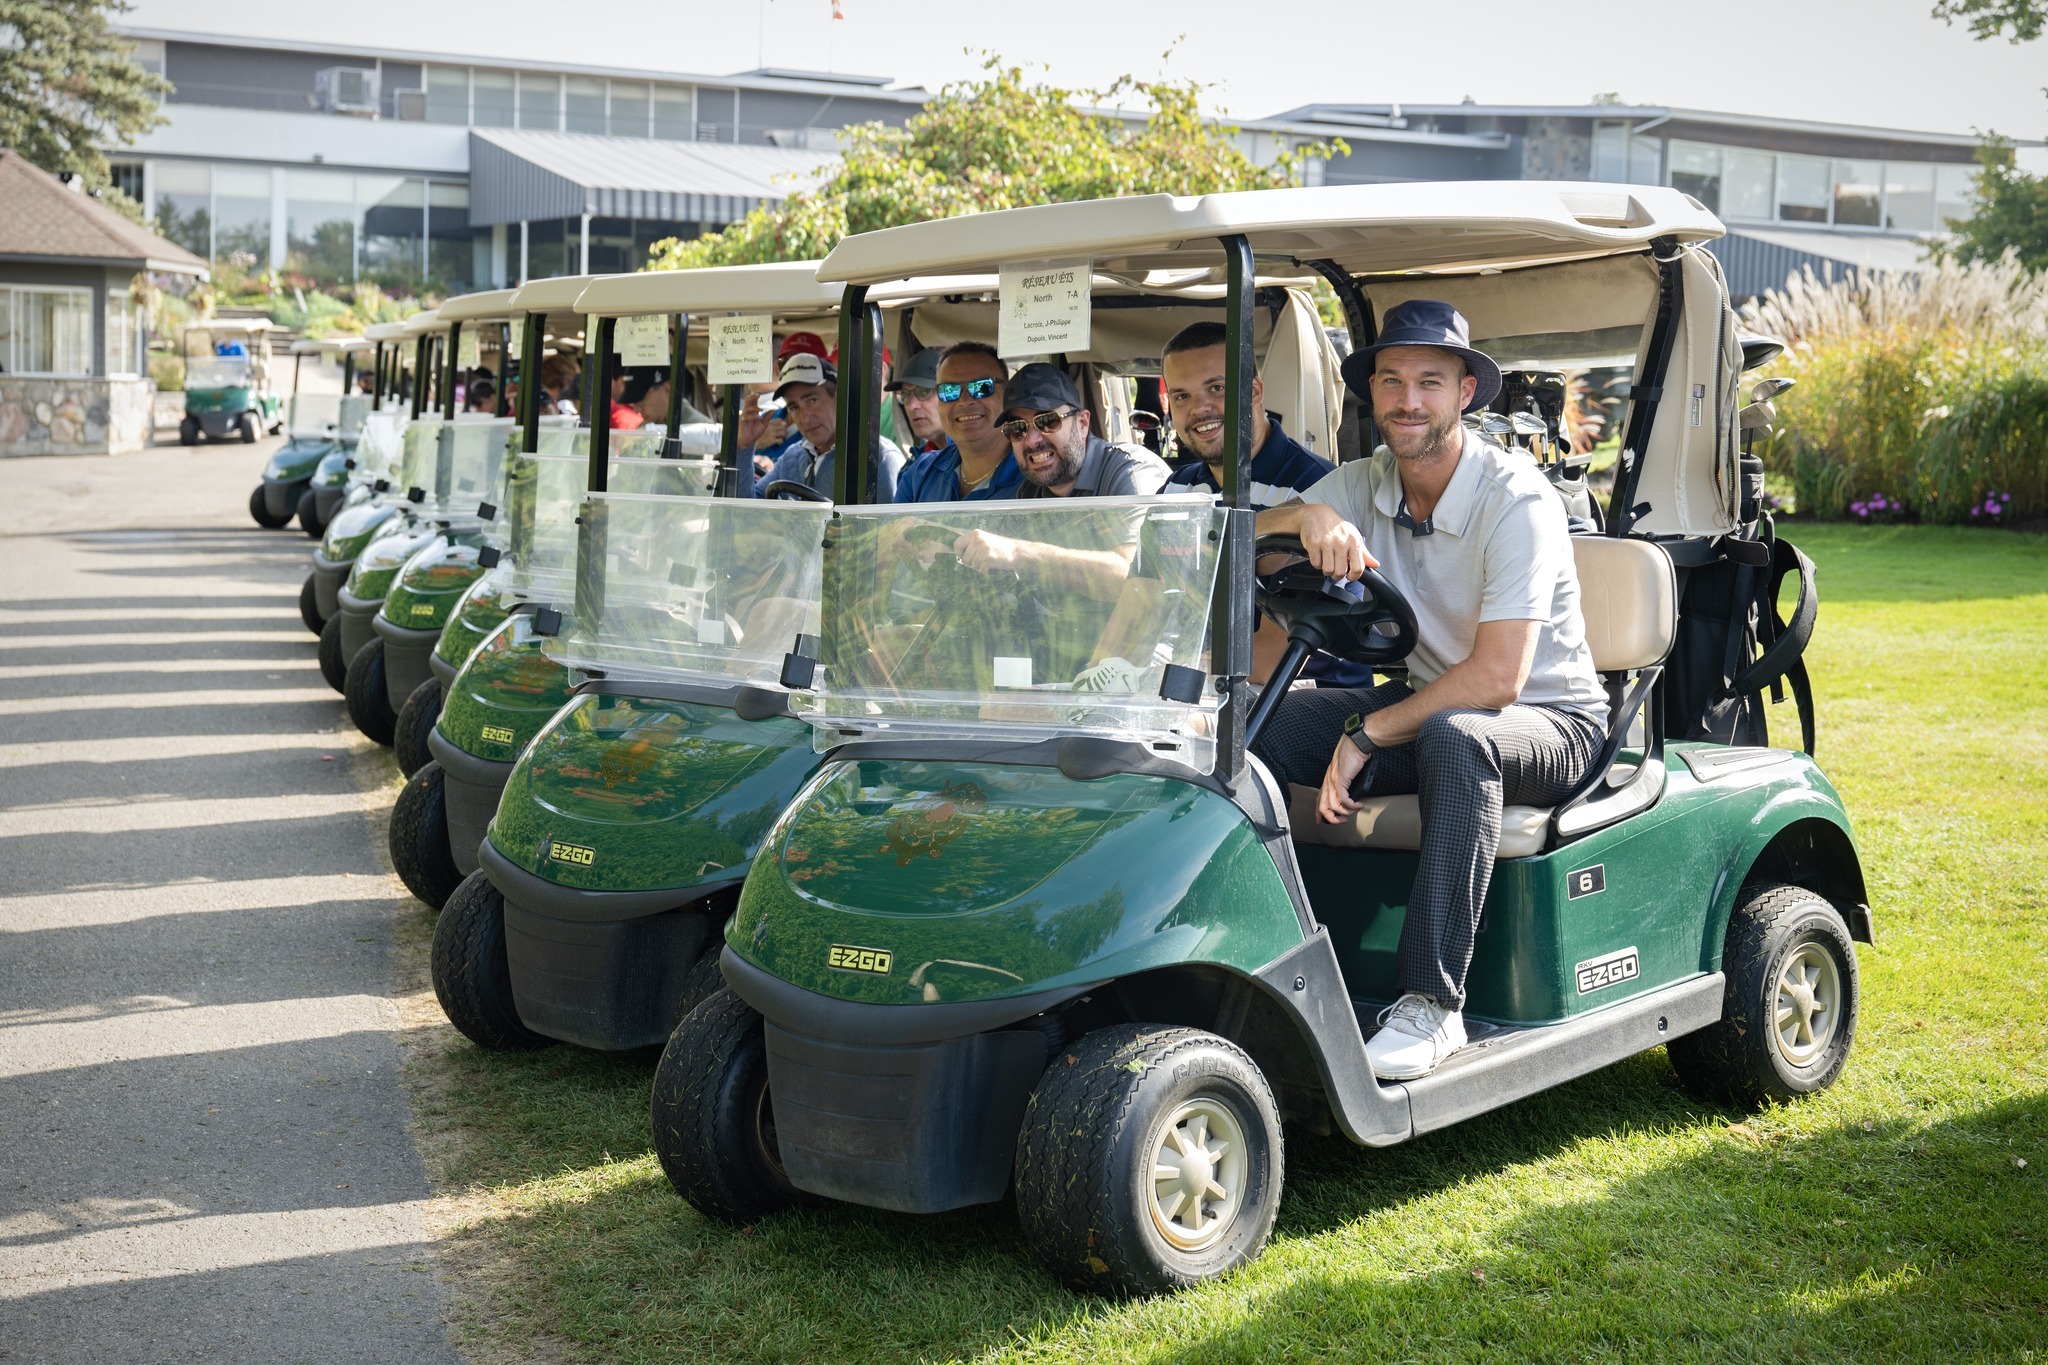 Activité sociale sur le campus avec des voitures de golf.